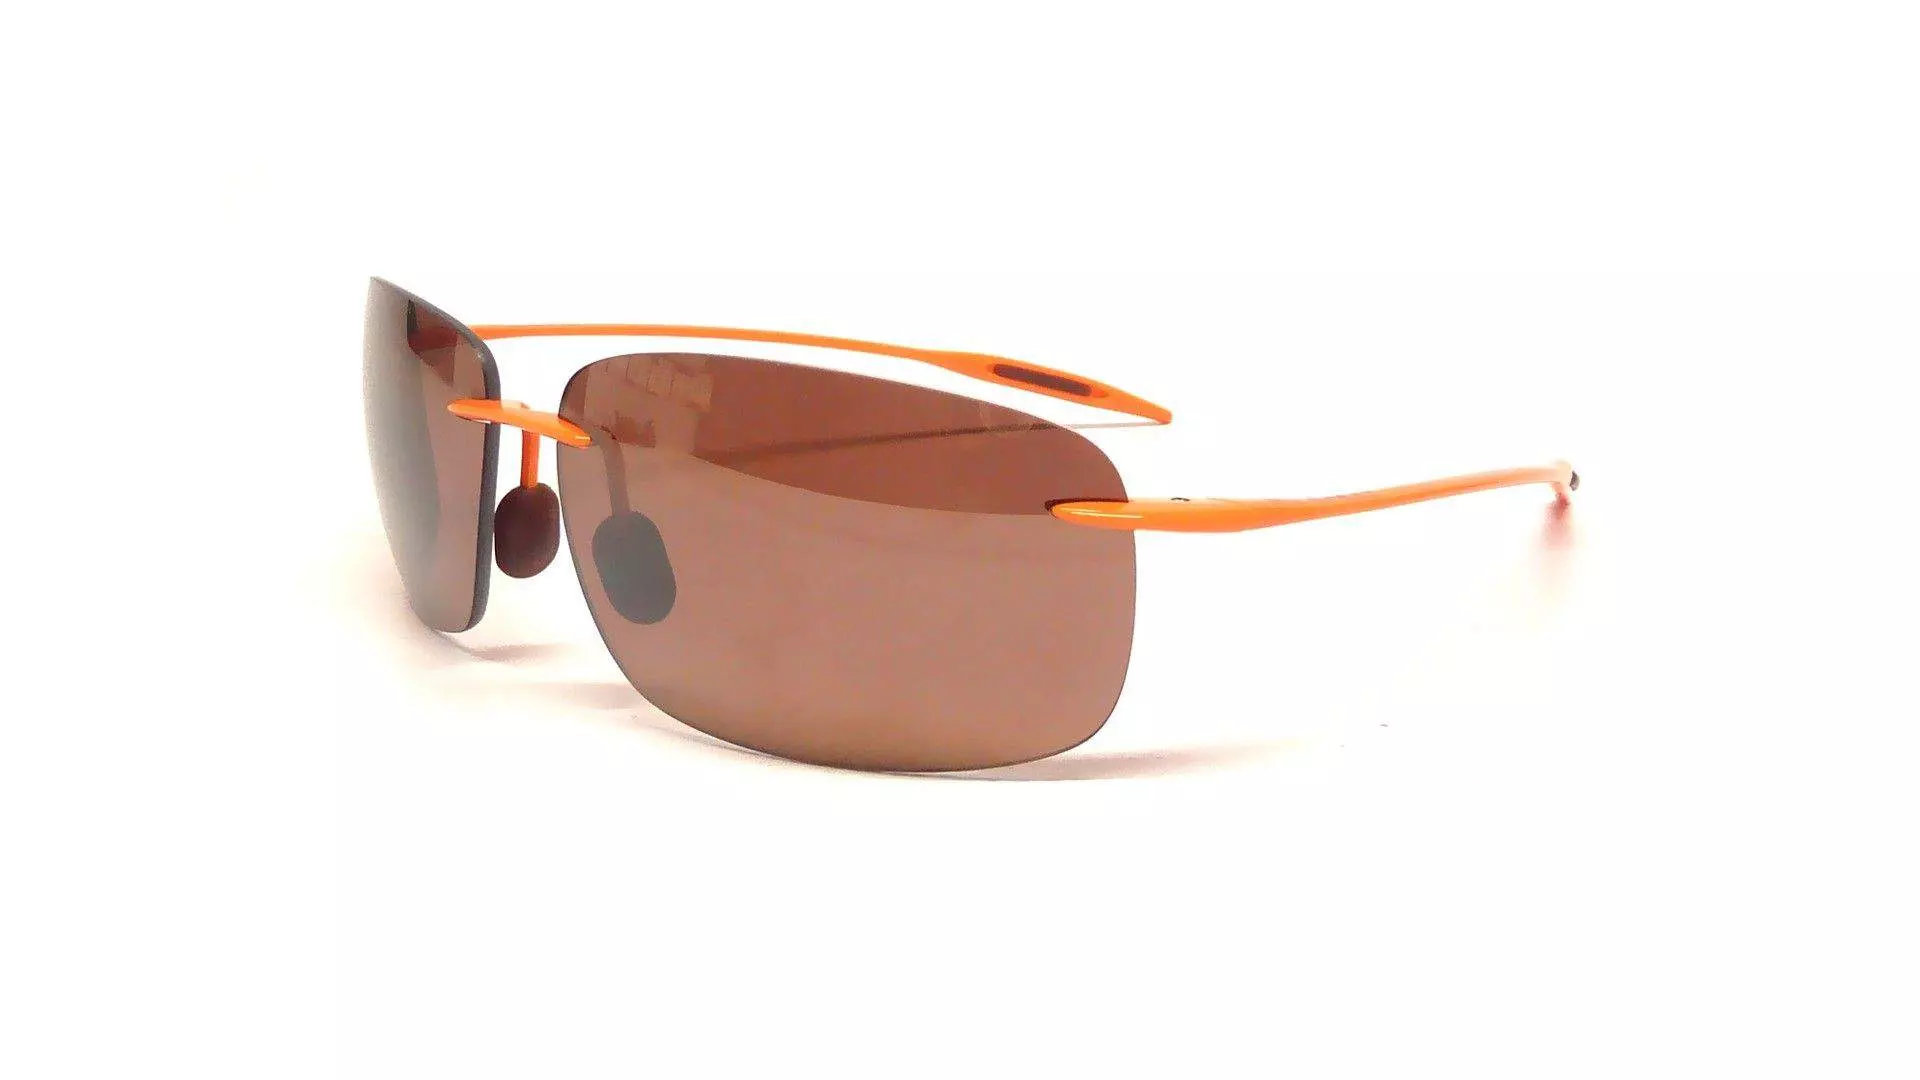 Okulary przeciwsłoneczne Maui Jim, brązowe soczwki, polaryzacja